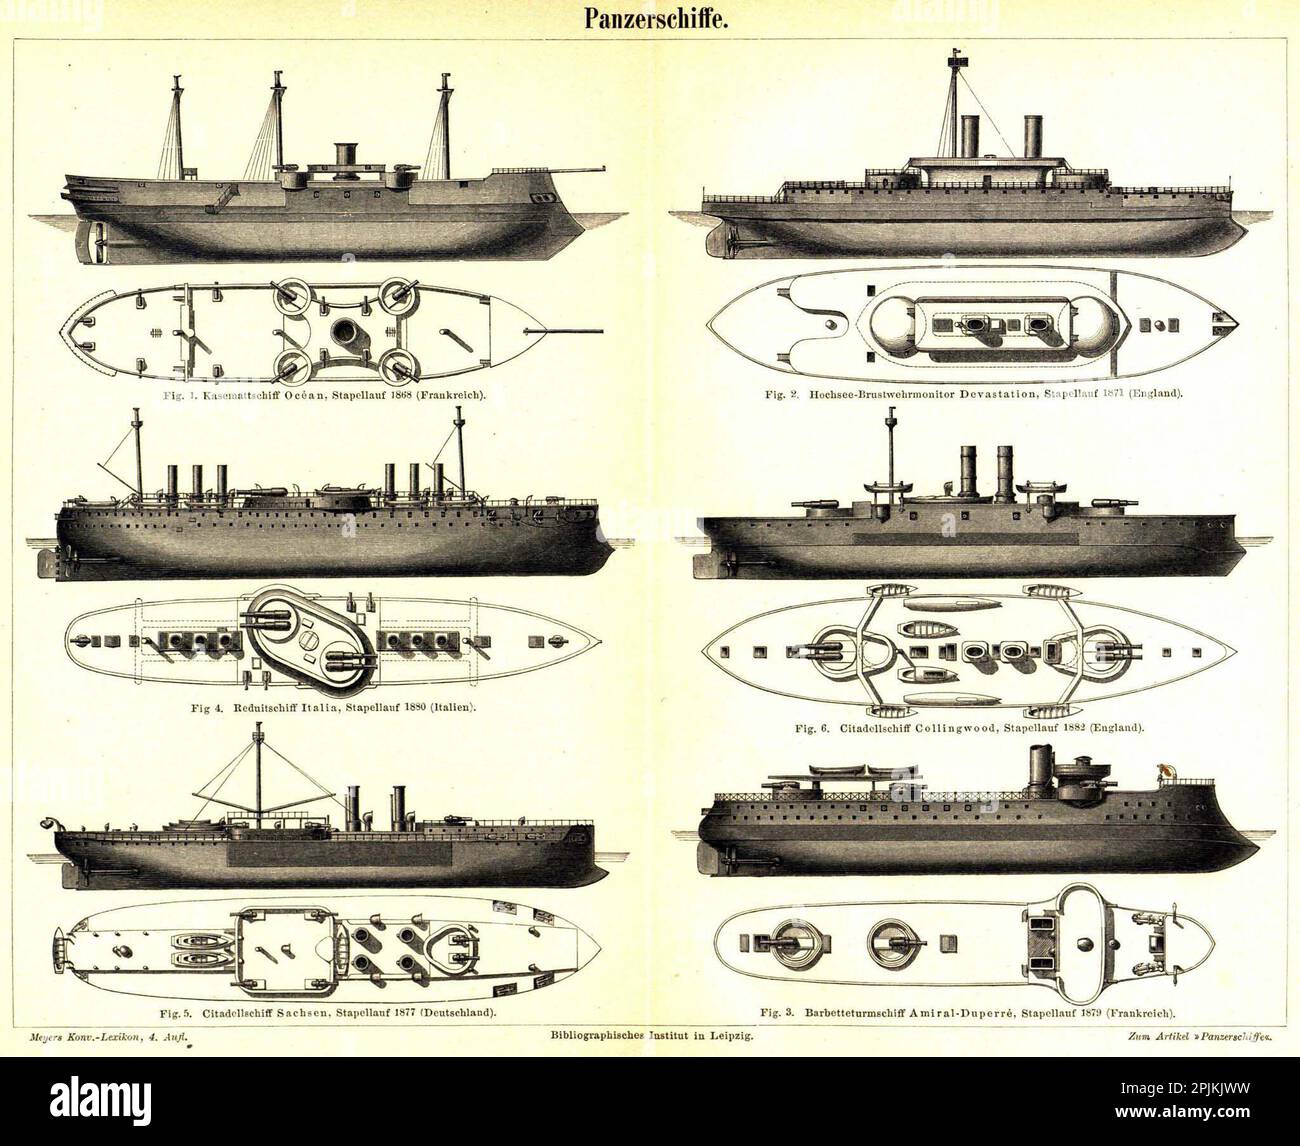 Dessins de l'ingénieur marin de six cutleships en fer de mer des 1800s - (de haut en bas, à gauche) l'Océan allemand, l'Italie Italia, la Saxe allemande, (de haut en bas, à droite) la dévastation de l'Angleterre et Collingwood, et l'Amiral Duperre de France Banque D'Images